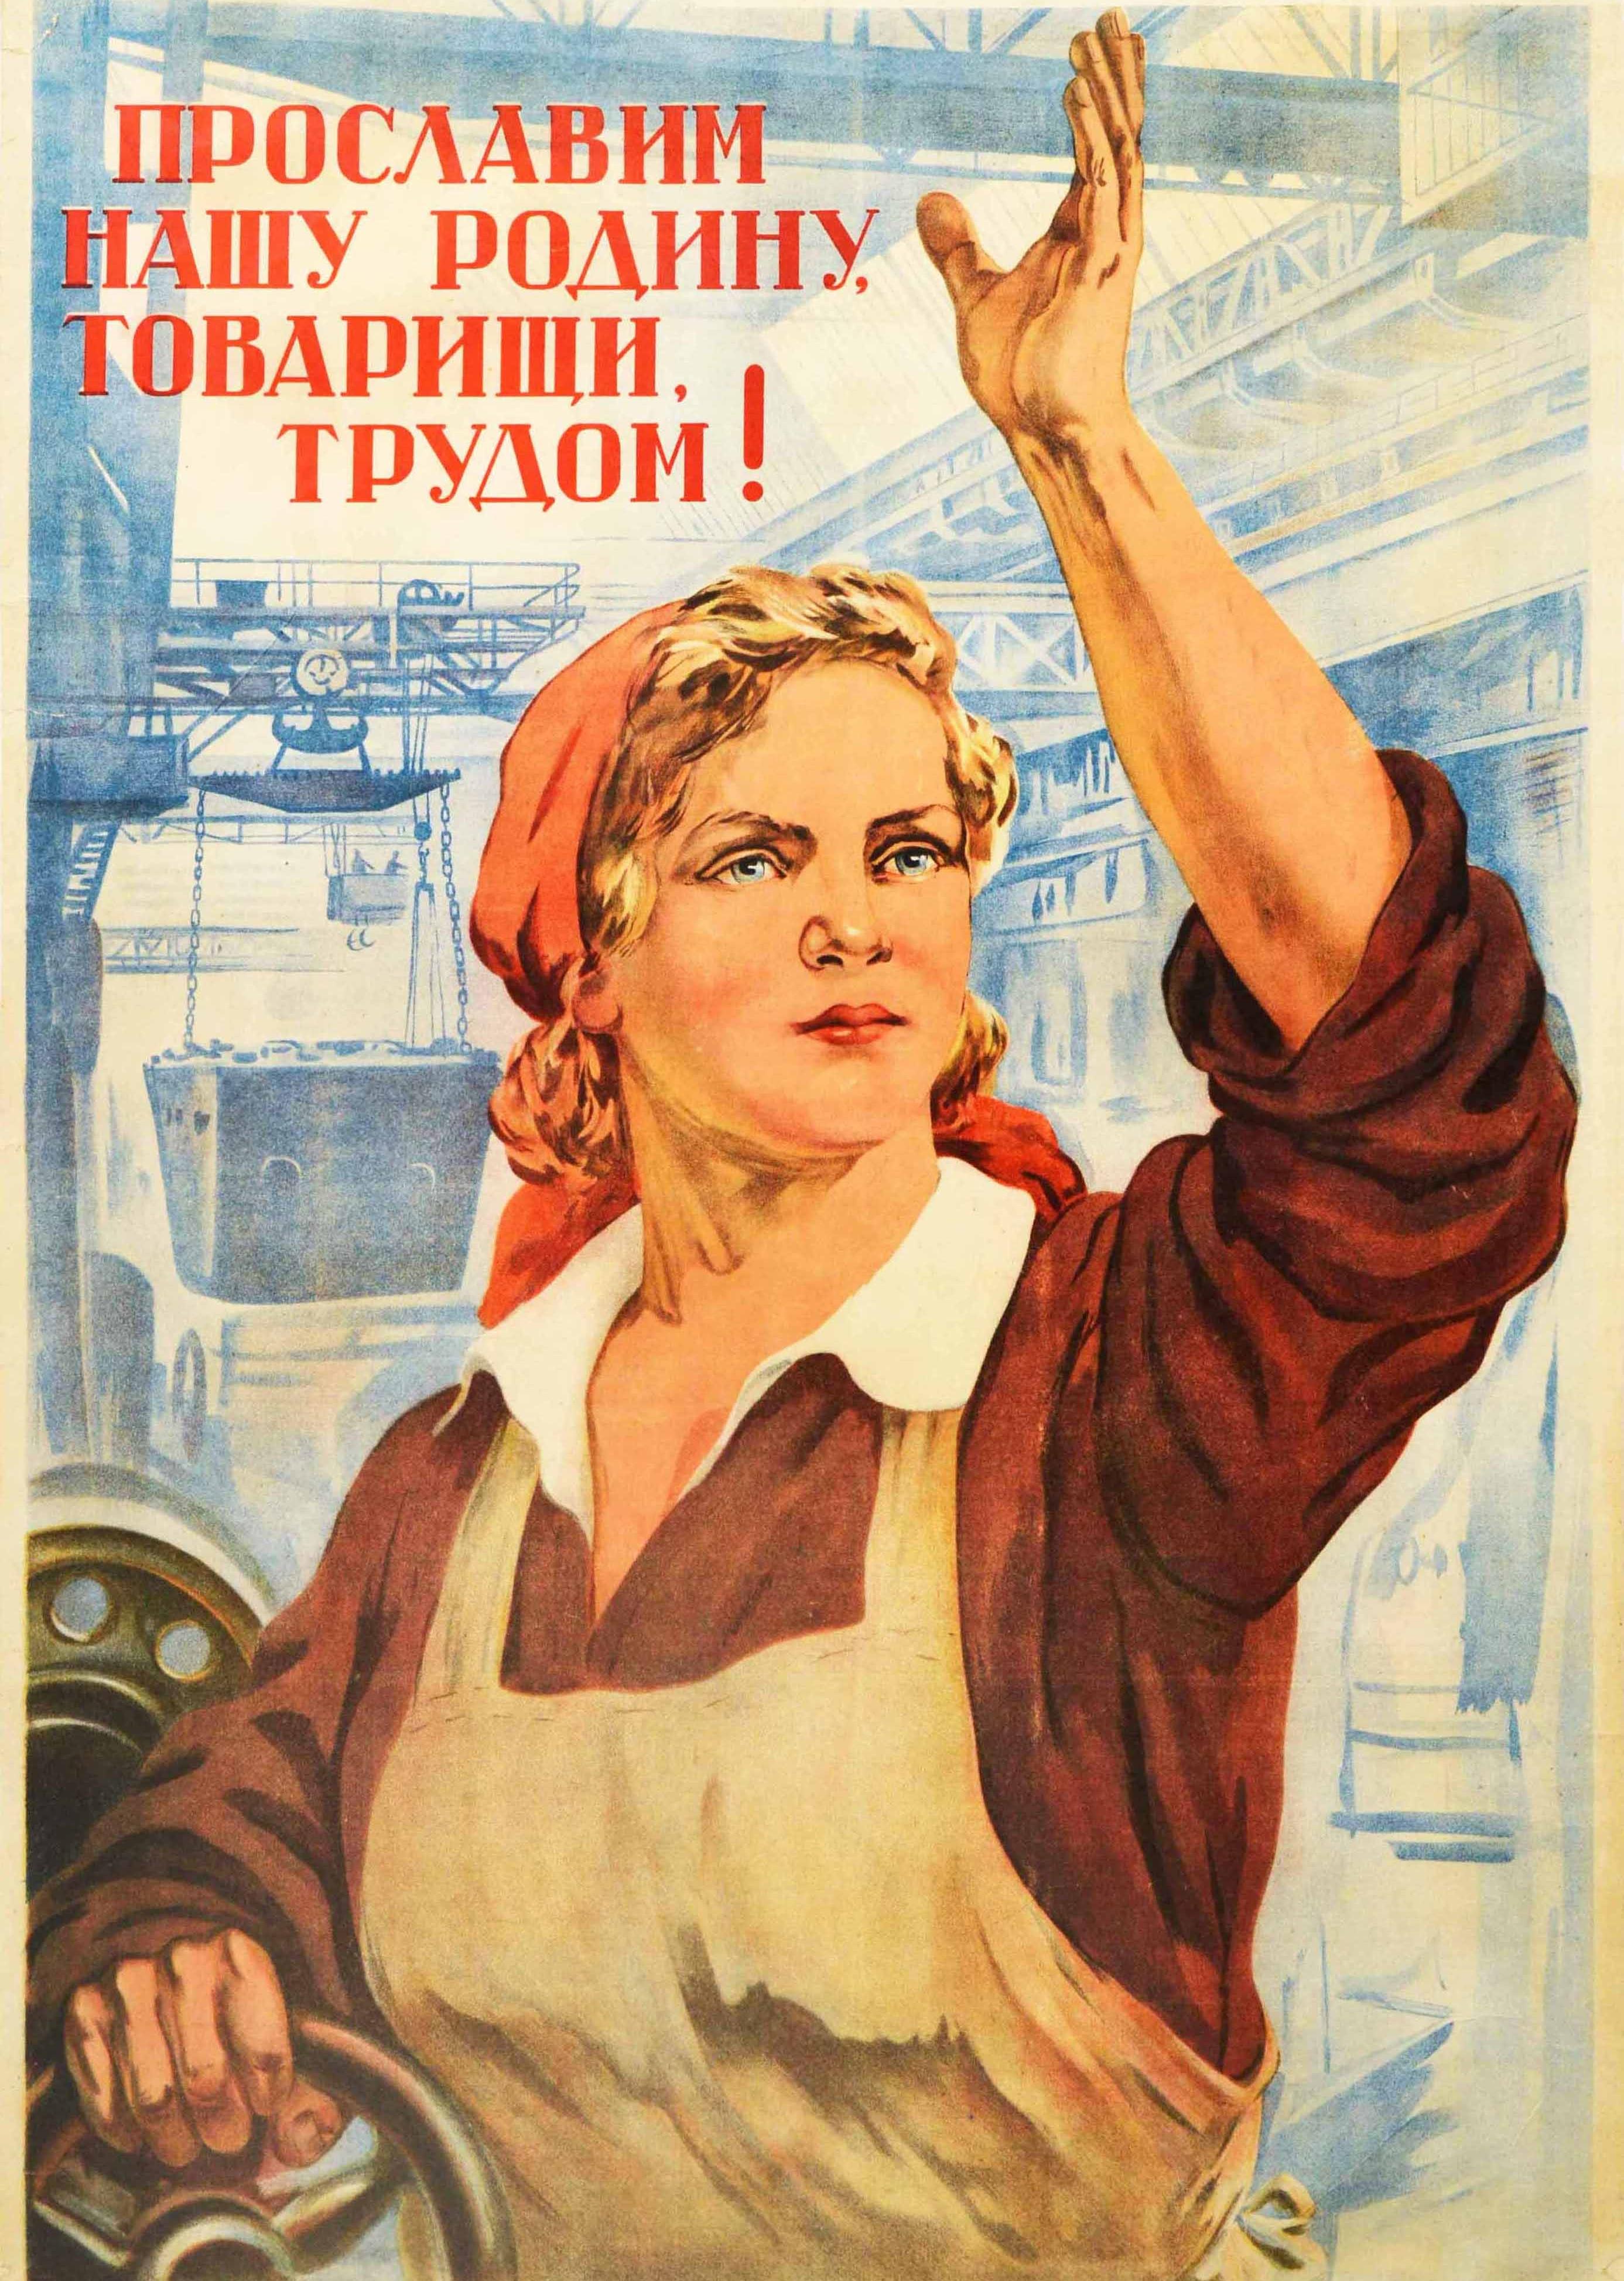 russian homelander poster